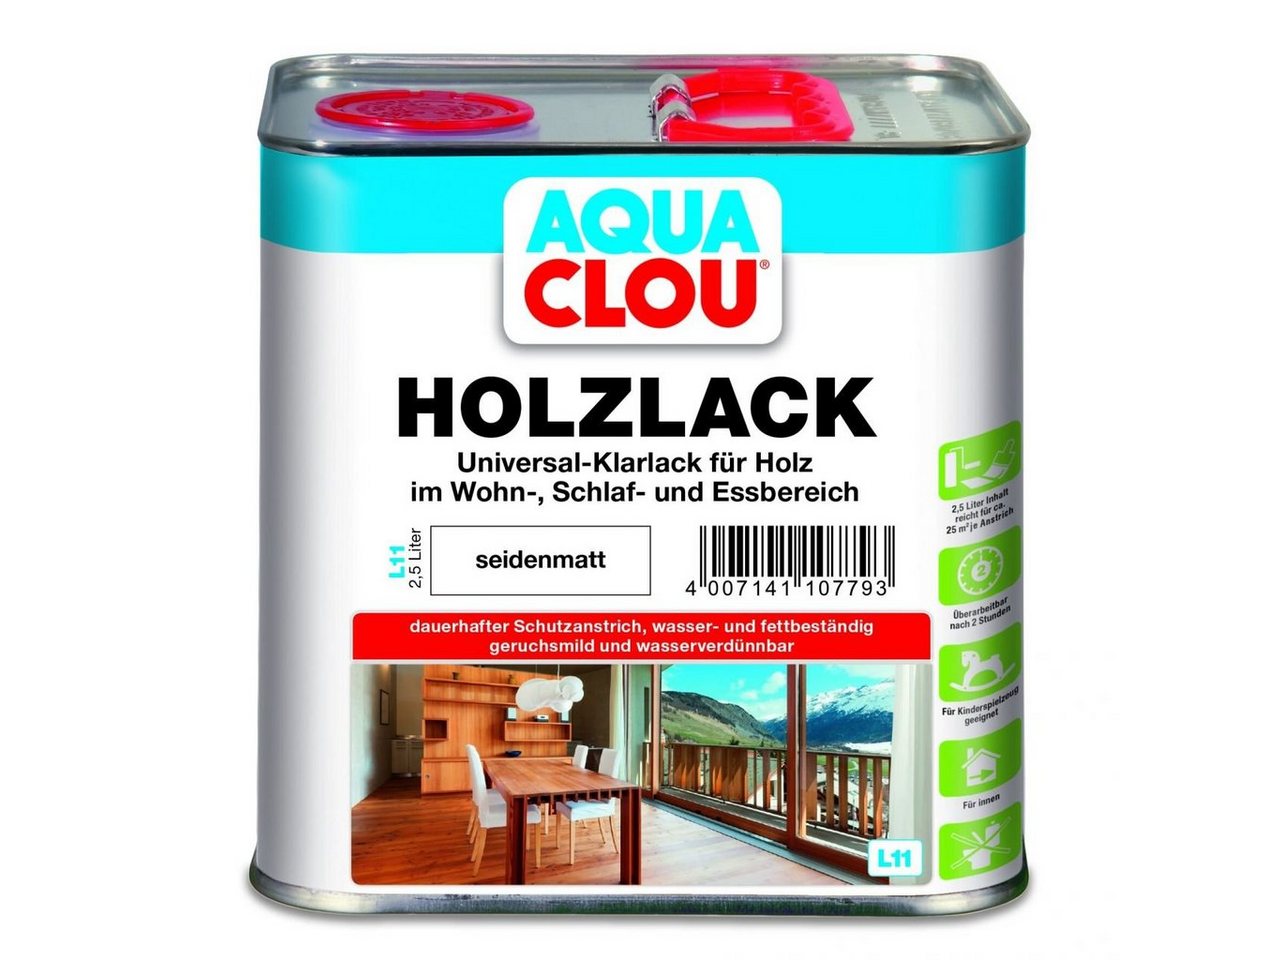 Aqua Clou Holzlack Aqua Clou Holzlack L11 2,5 L seidenmatt von Aqua Clou